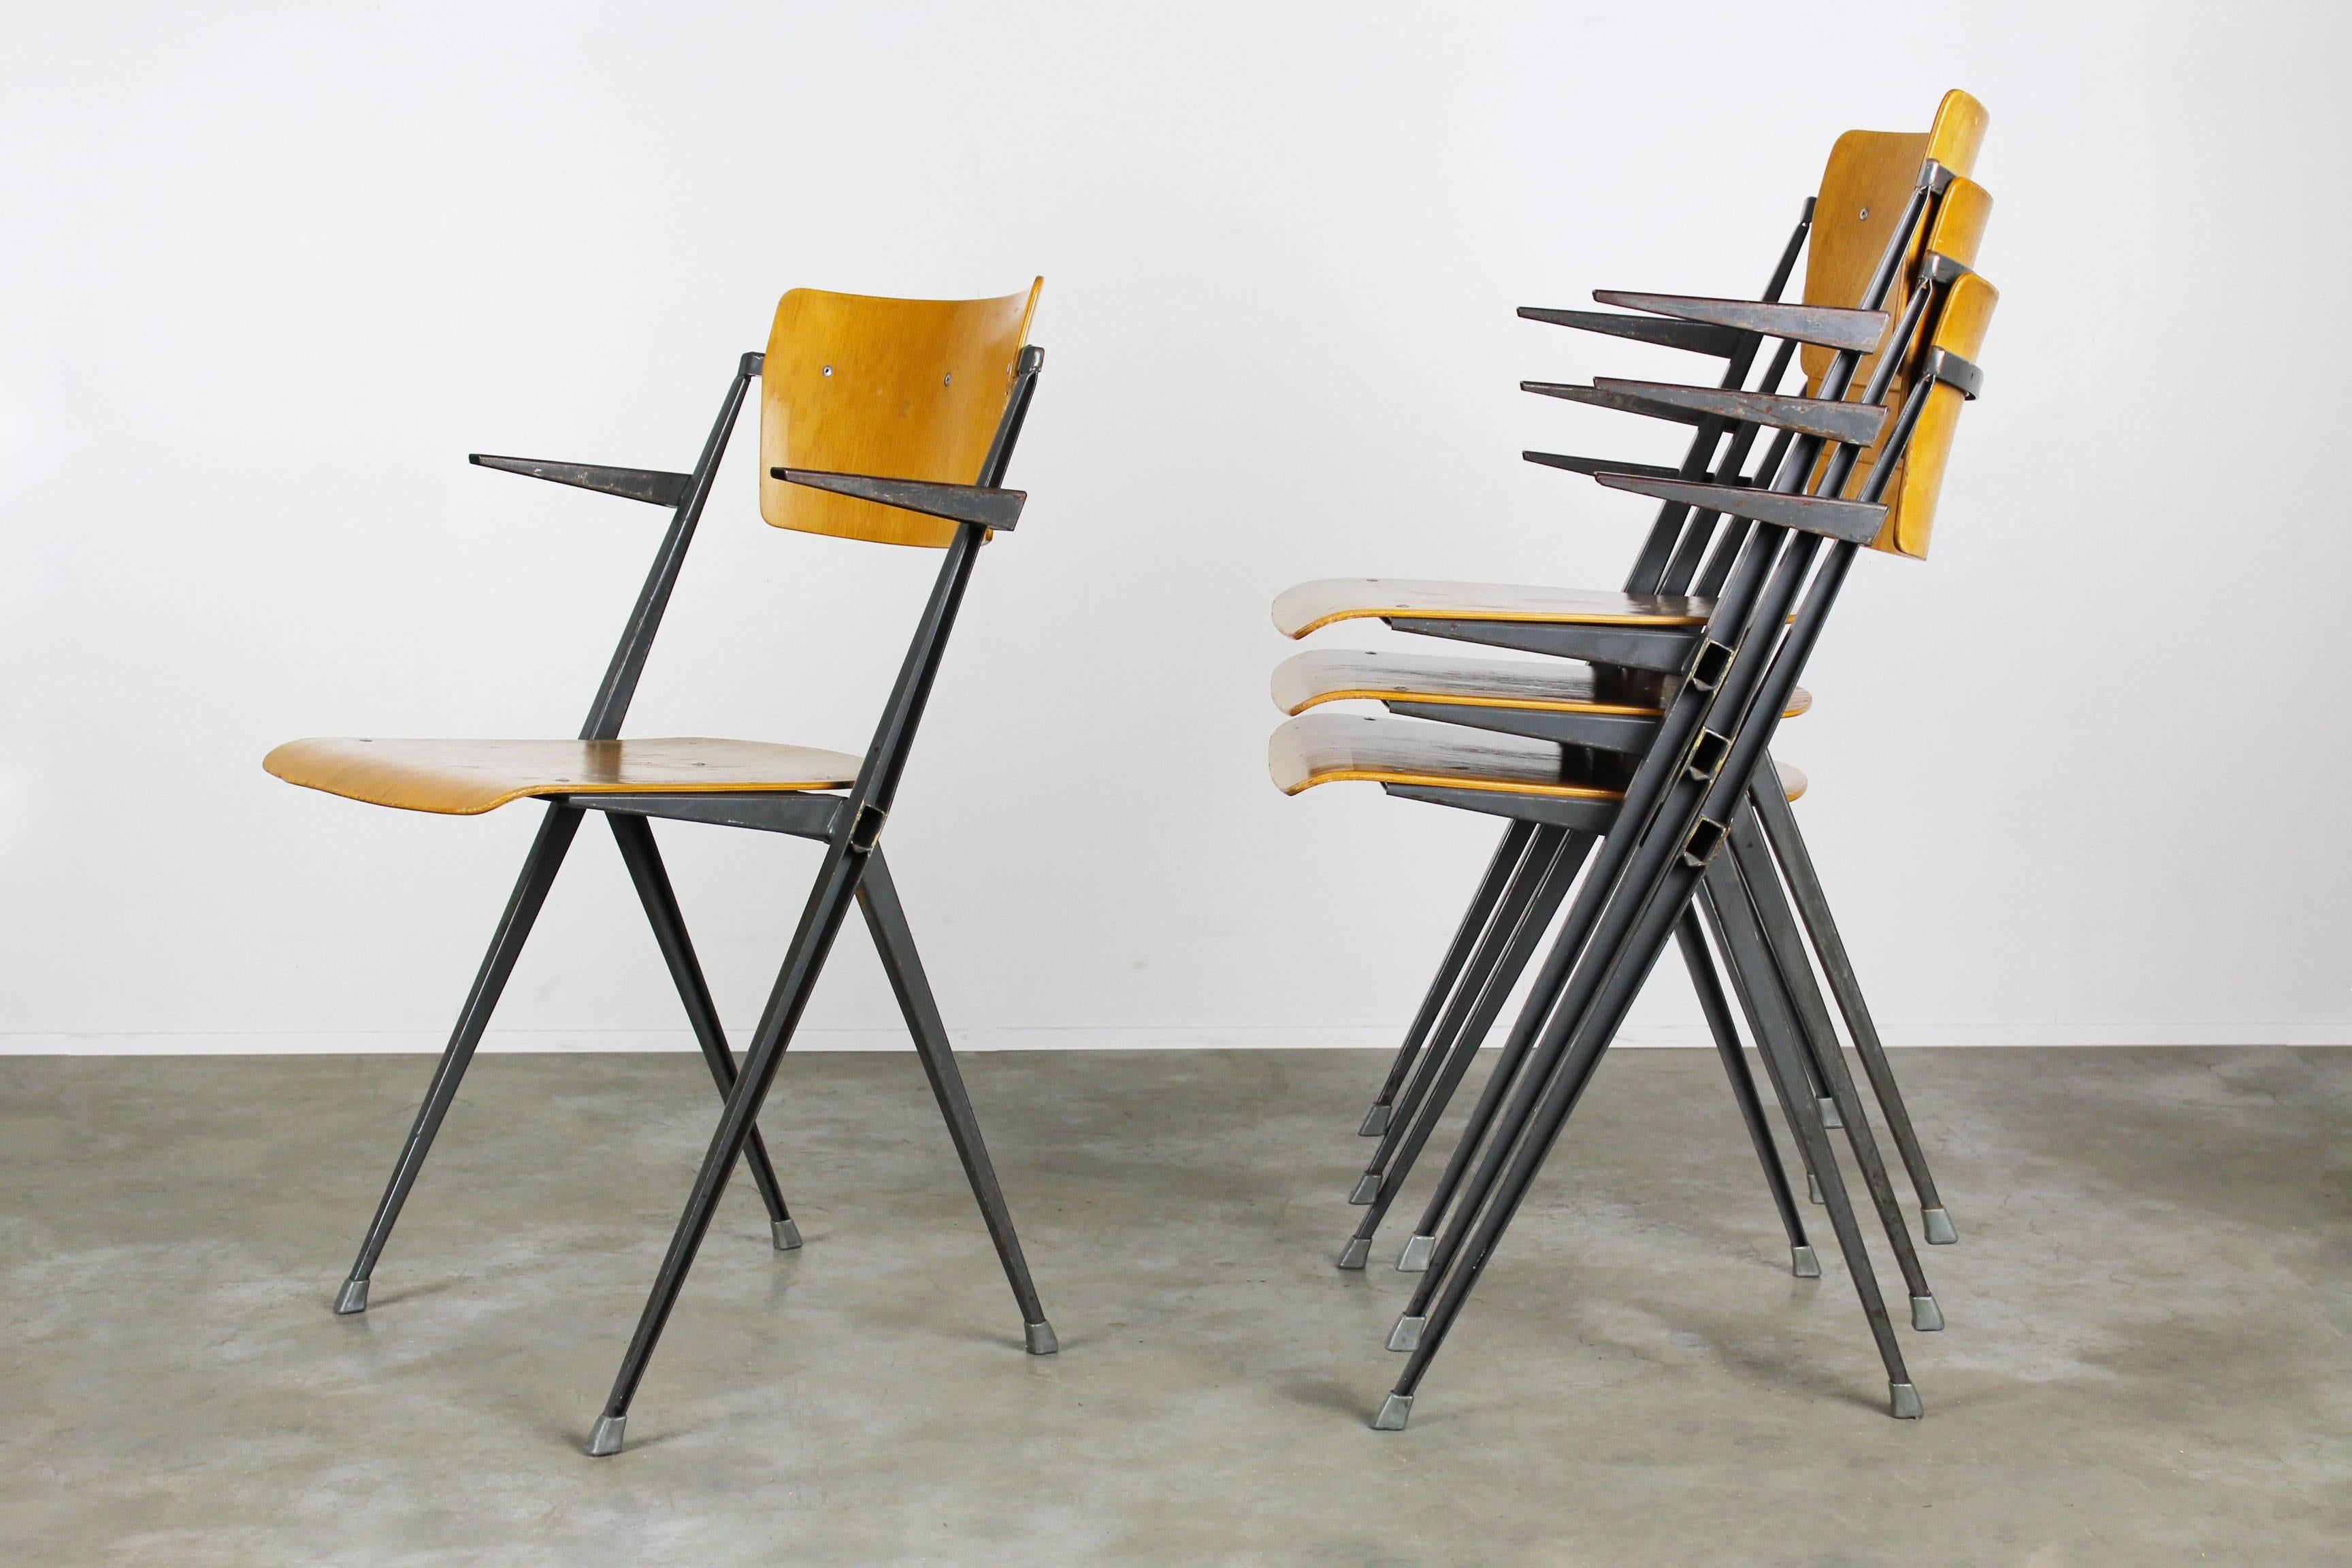 Ensemble de quatre chaises pyramidales avec accoudoirs conçues par le designer néerlandais Wim Rietveld pour Ahrend de Cirkel en 1963. Ensemble très difficile à trouver. Les chaises ont une magnifique patine, en particulier les accoudoirs. Le design